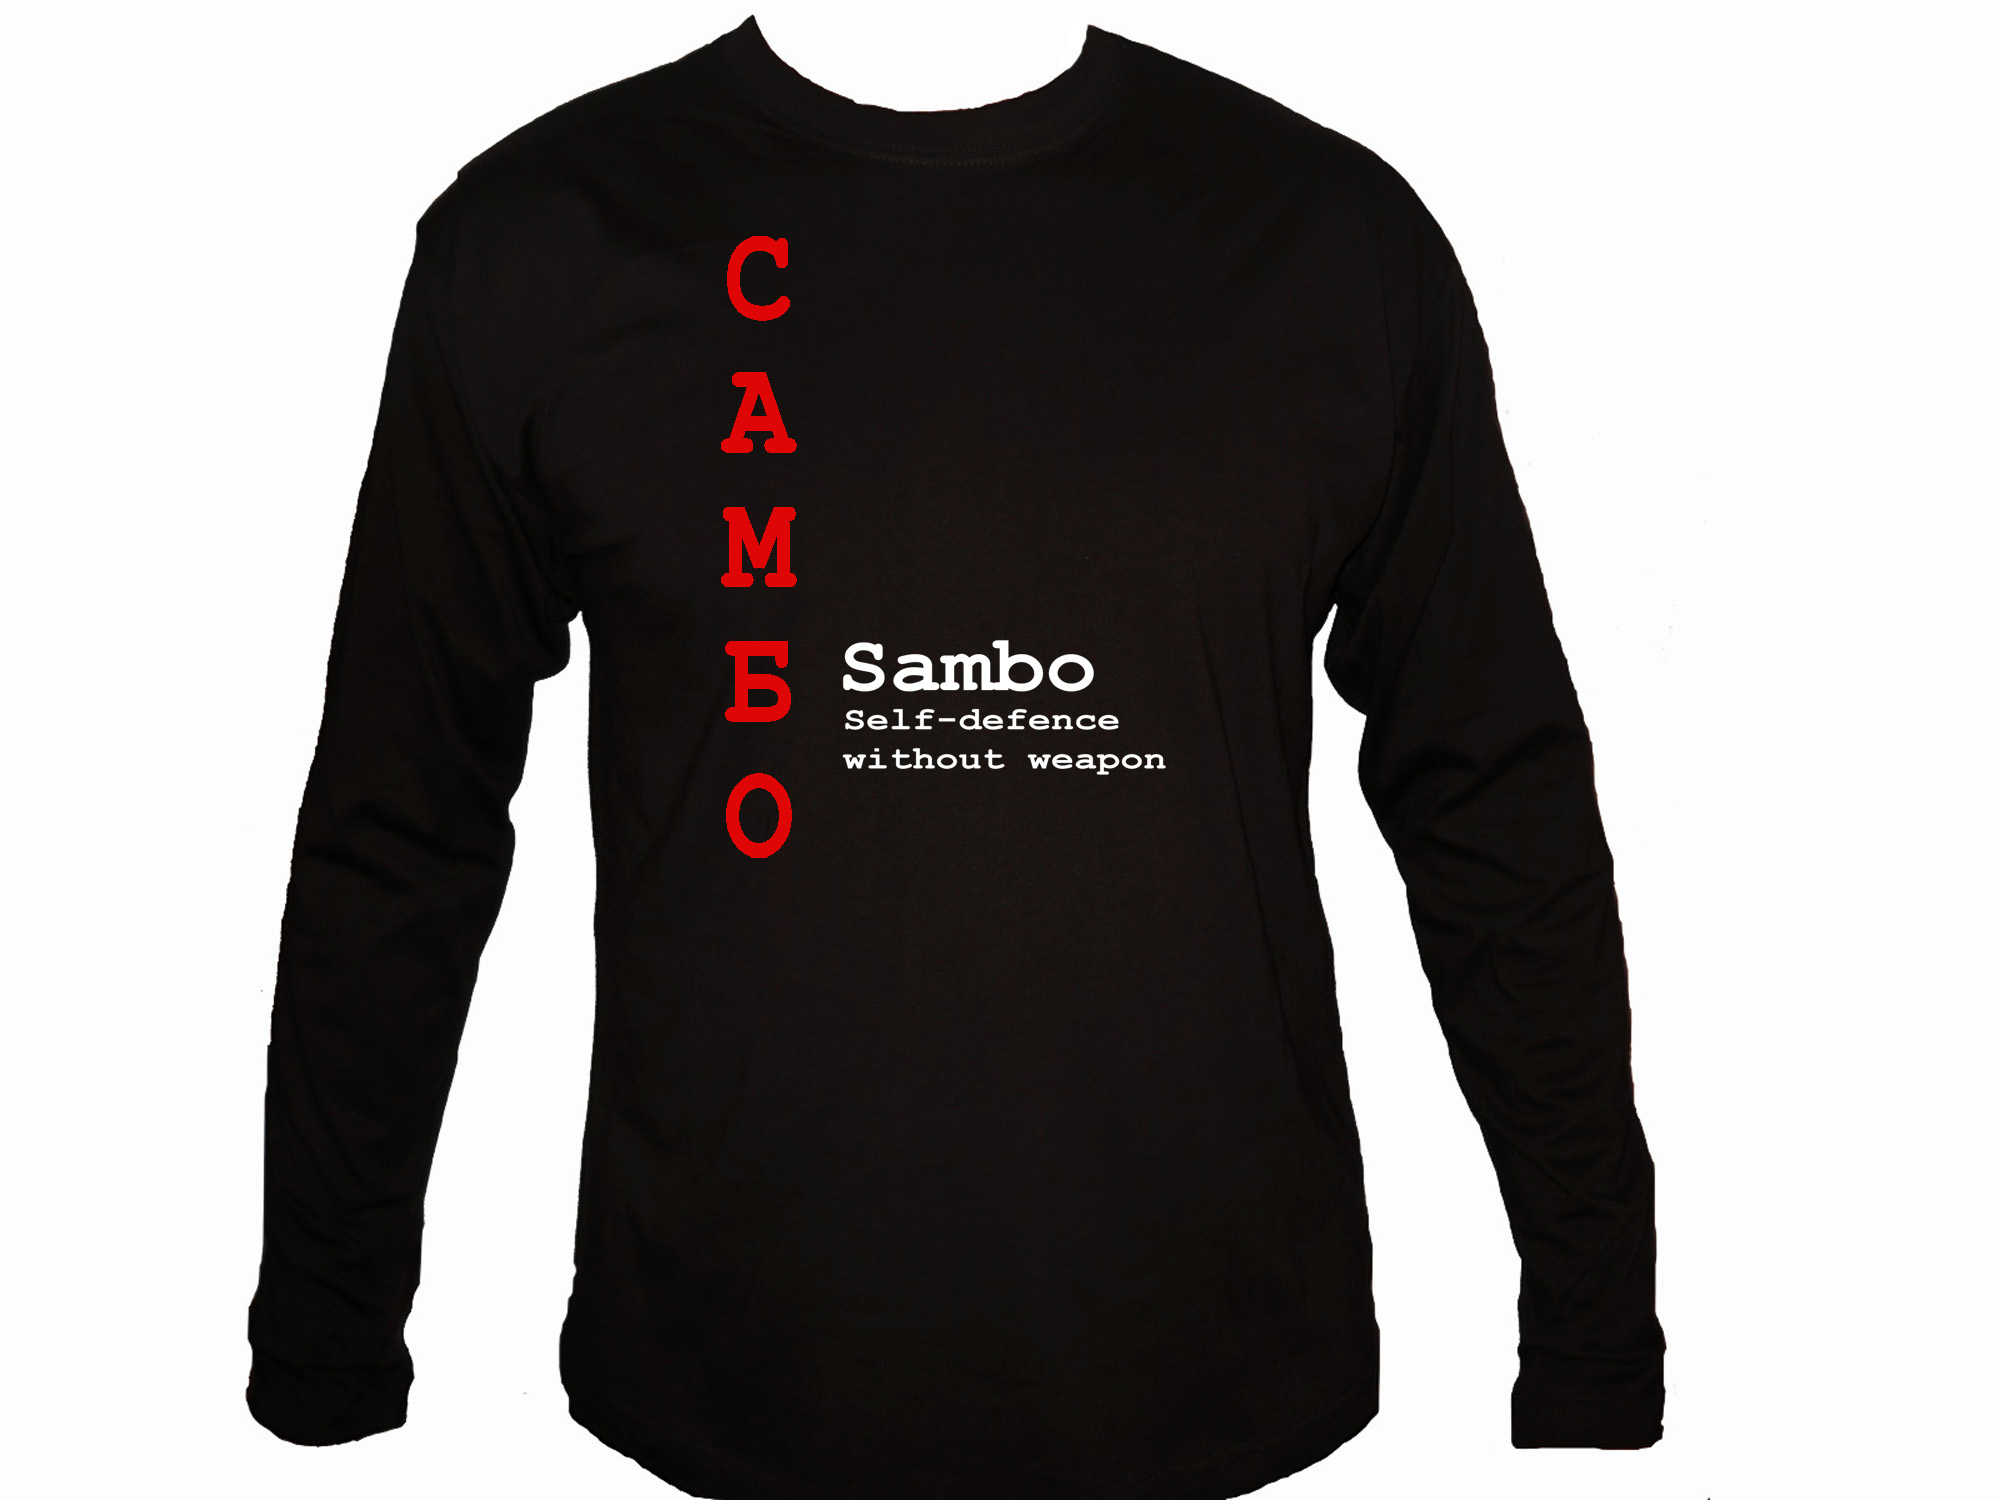 Sambo самбо English/Russian martial arts sleeved t-shirt